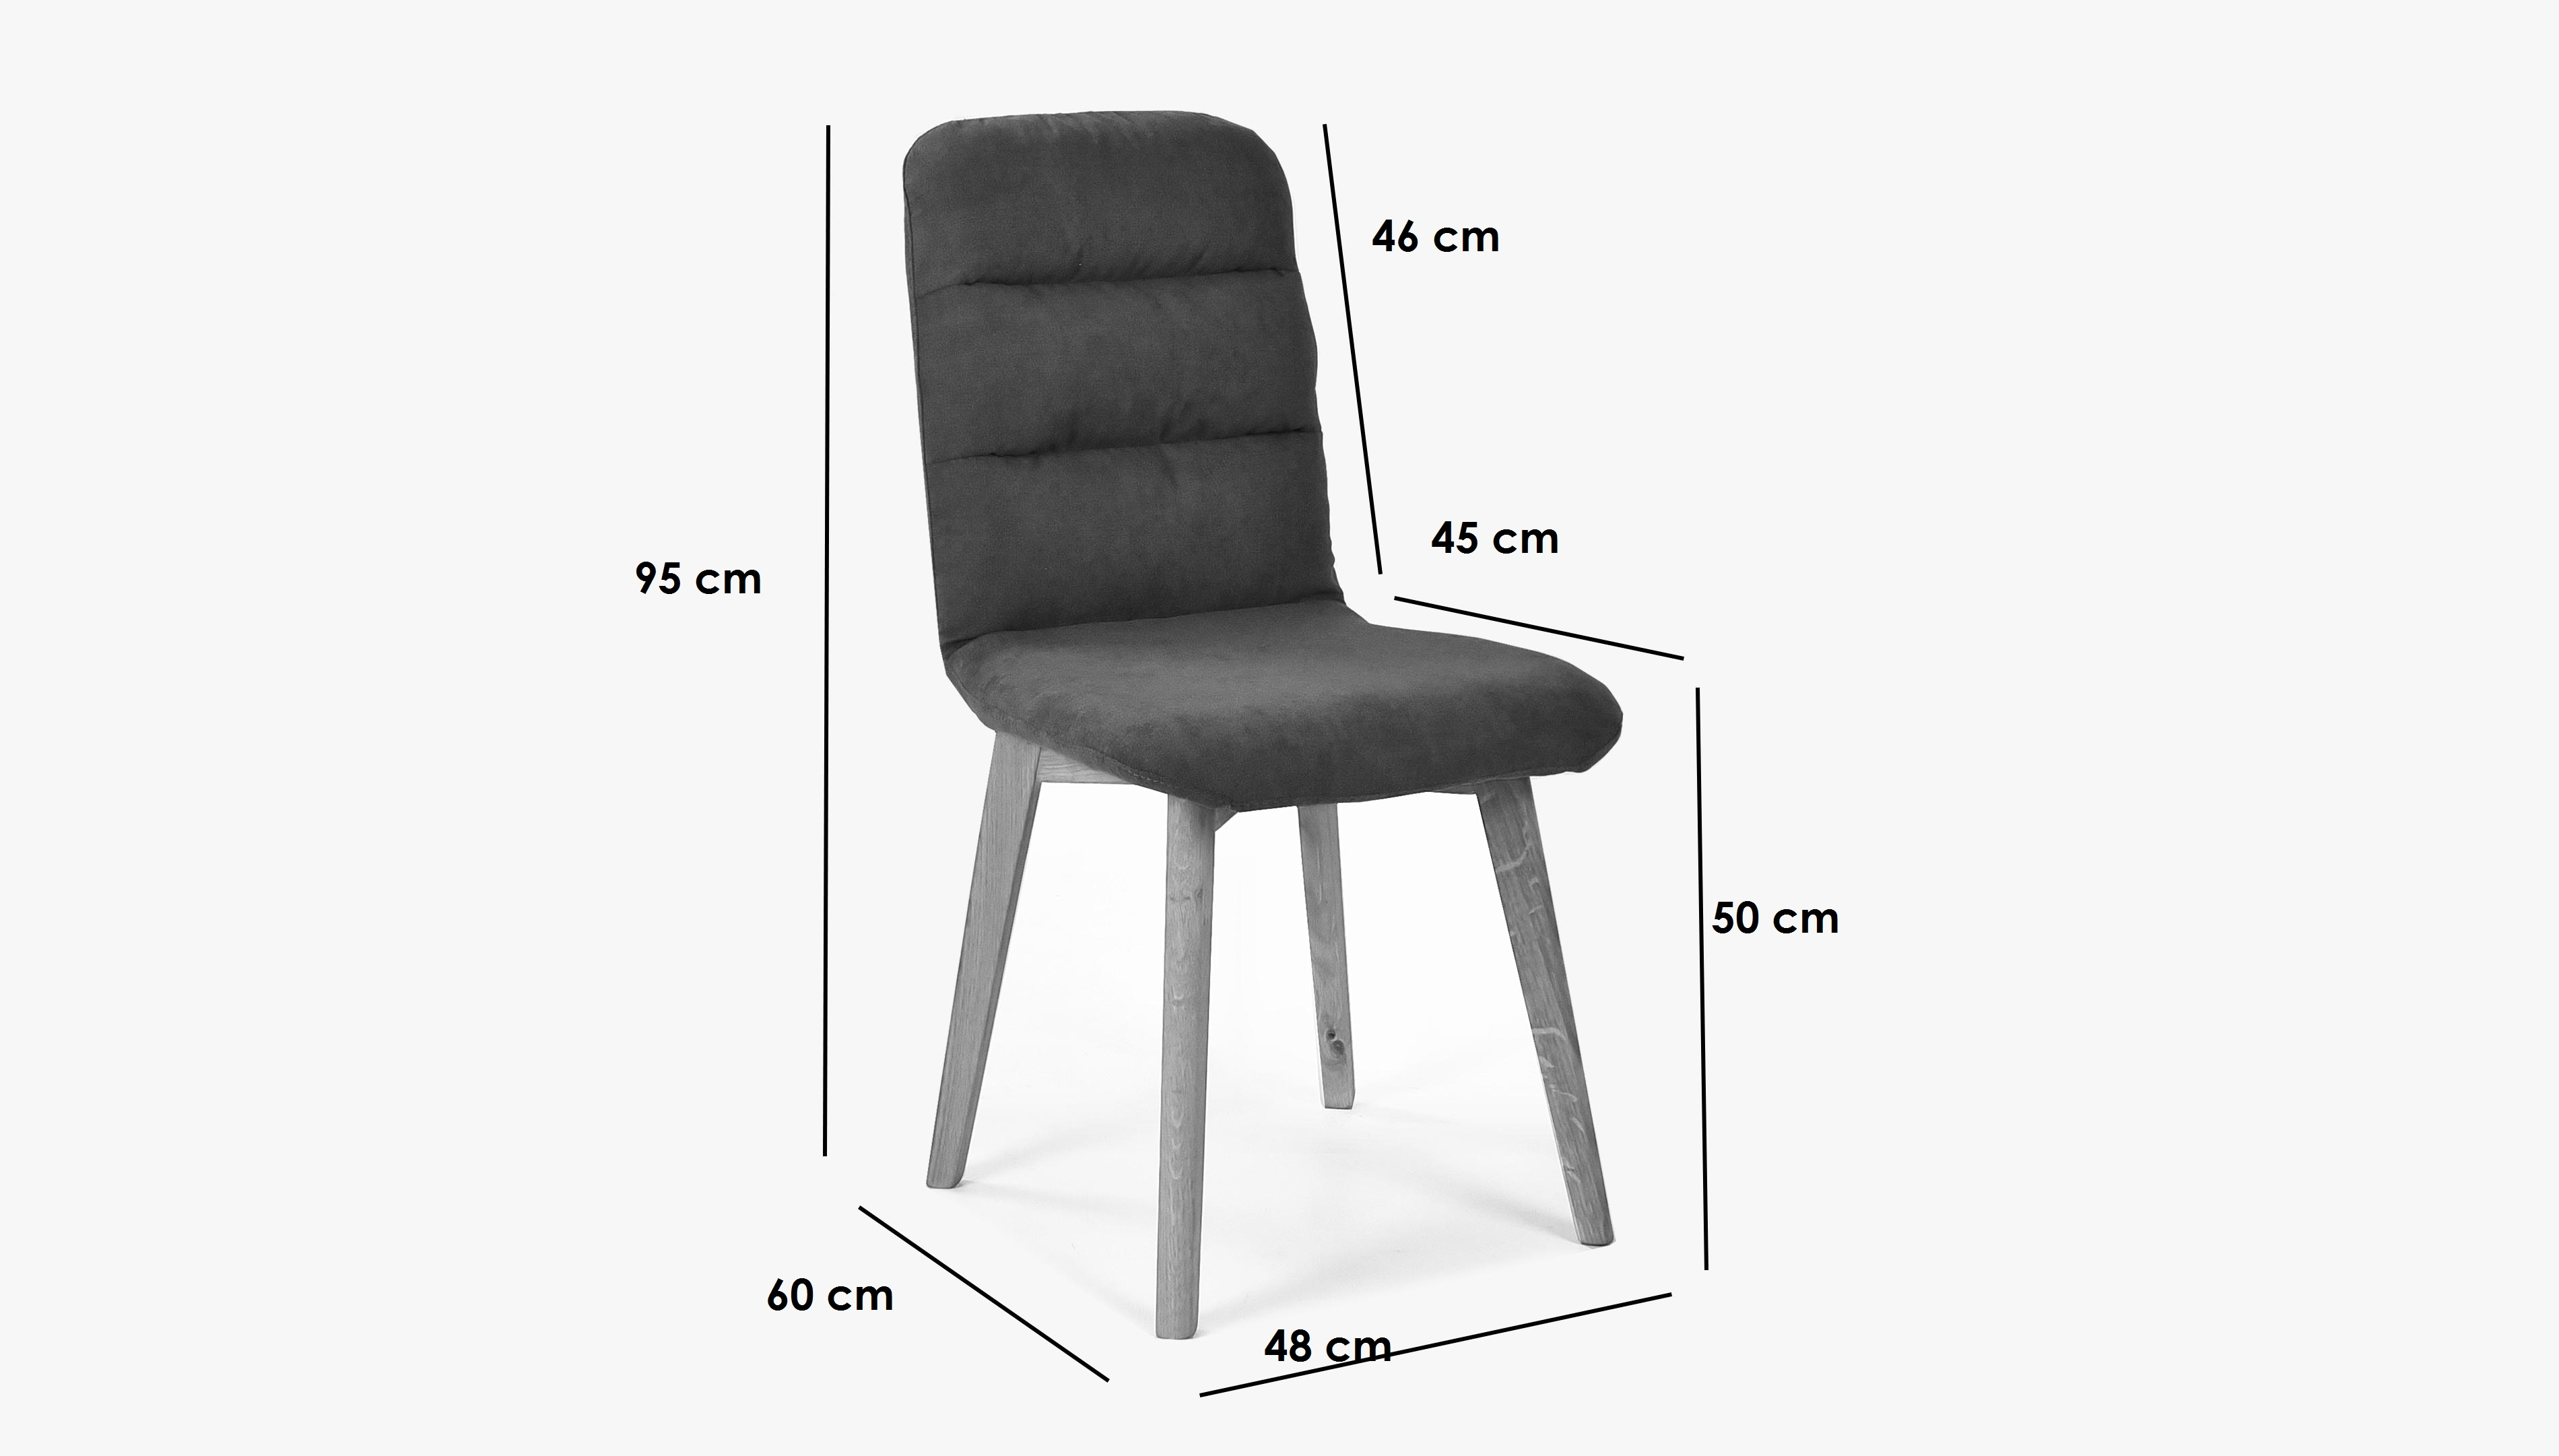 Pohodlná židle, šedá látka - dubové nohy Orlando